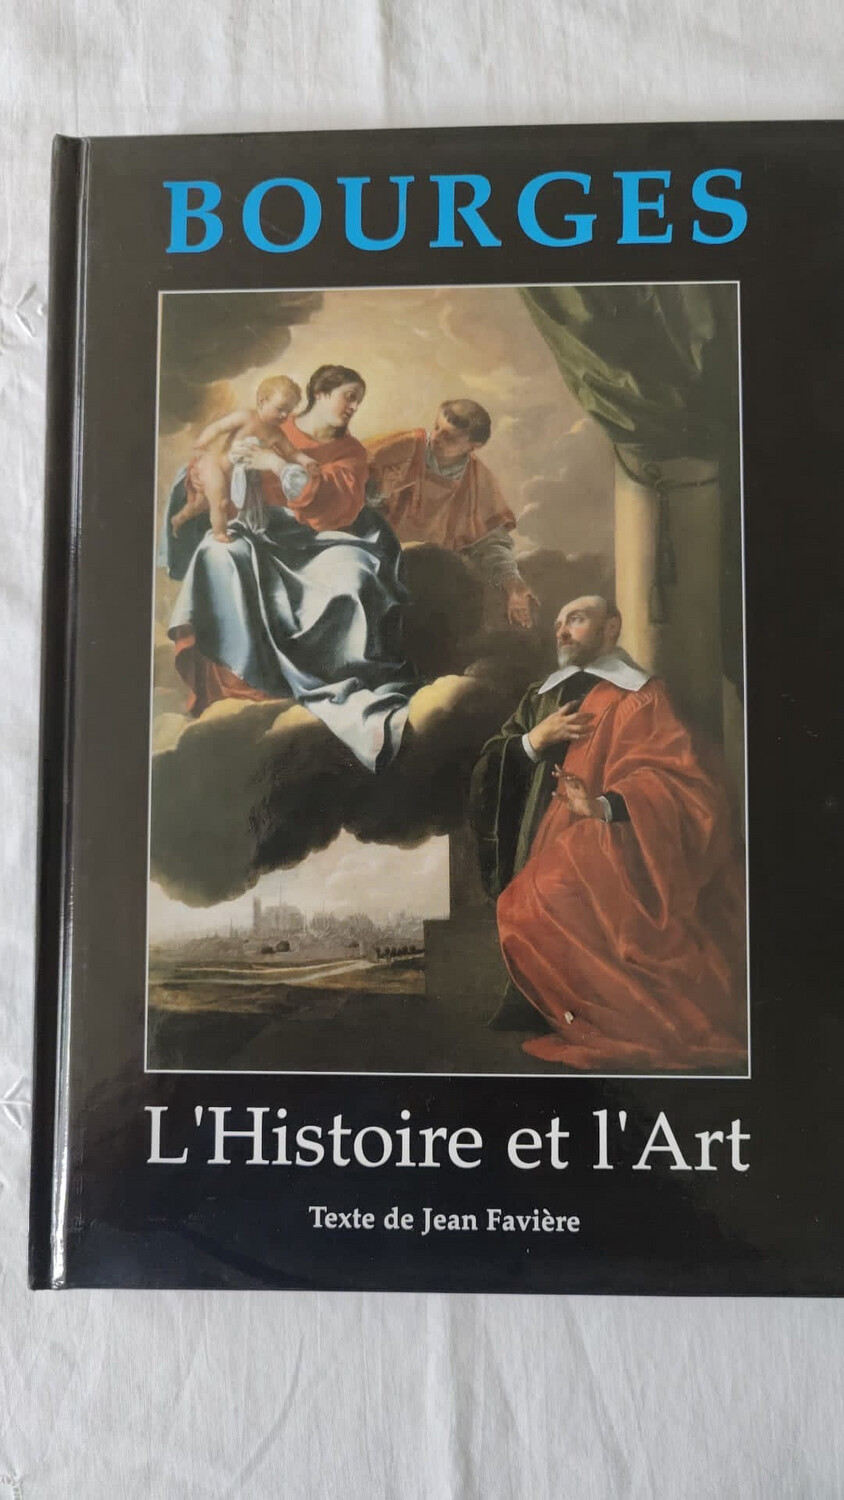 Livre « L’histoire et l’Art » de Jean Favière